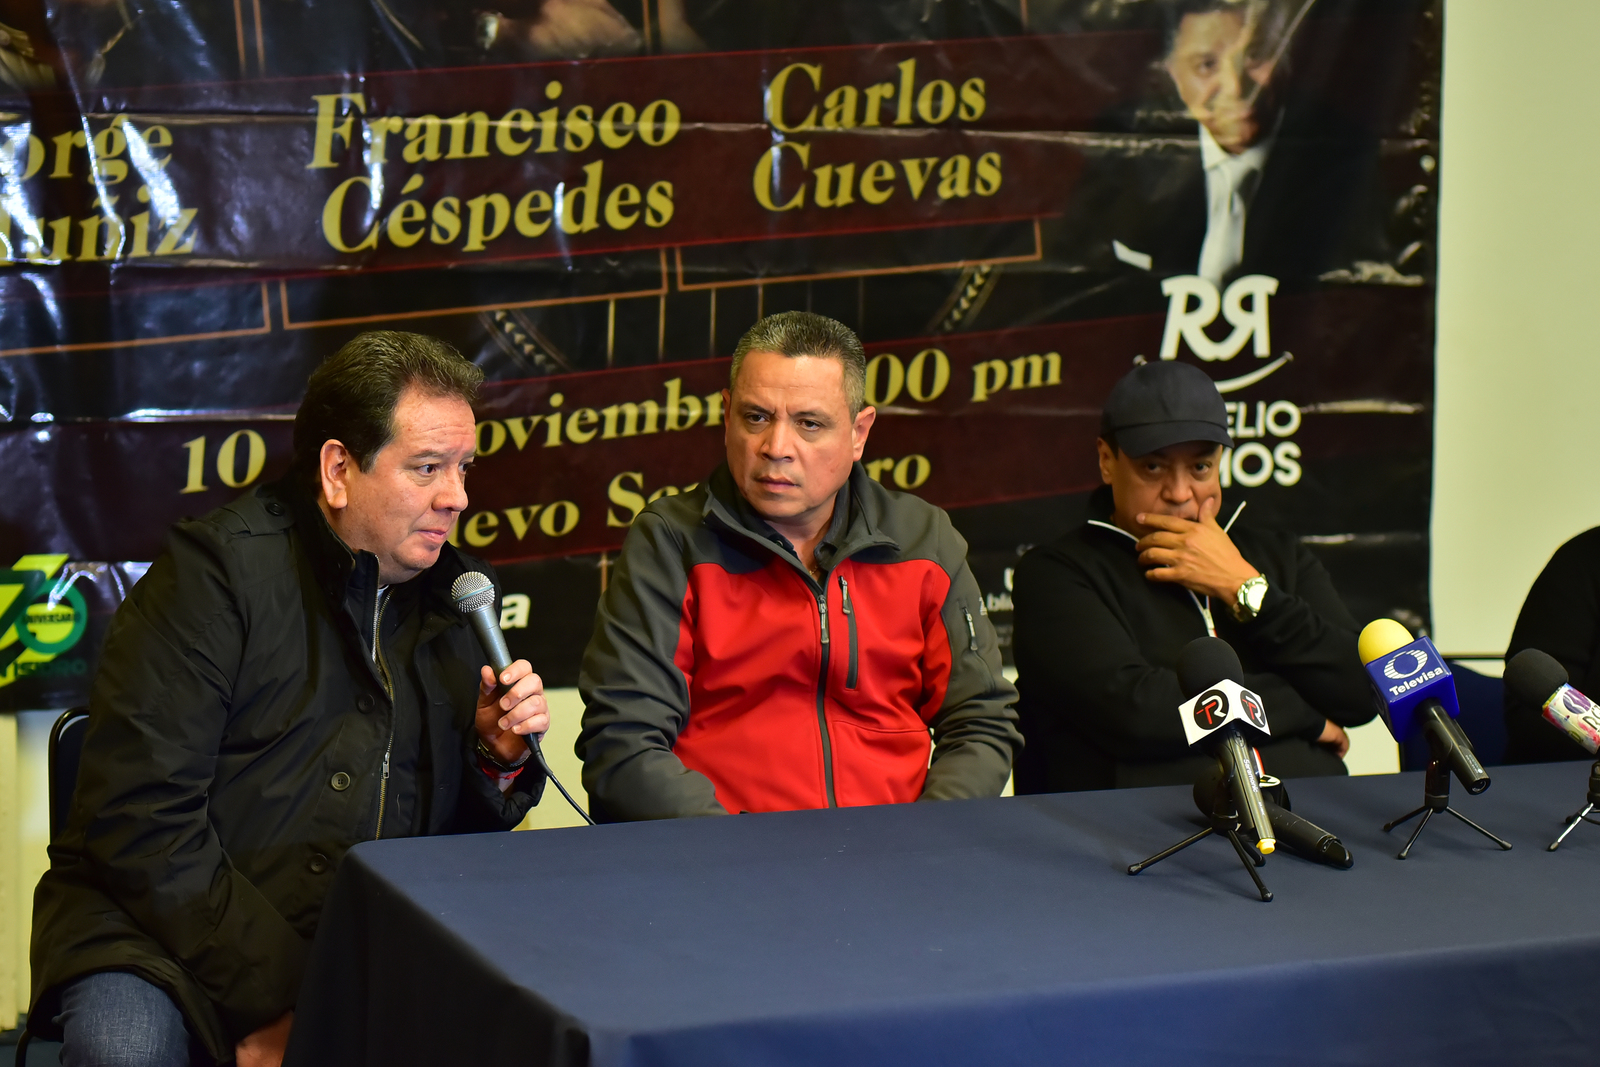 Salud. El cantante Francisco Céspedes no pudo llegar a la región para presentarse junto a Jorge Muniz y Carlos Cuevas.